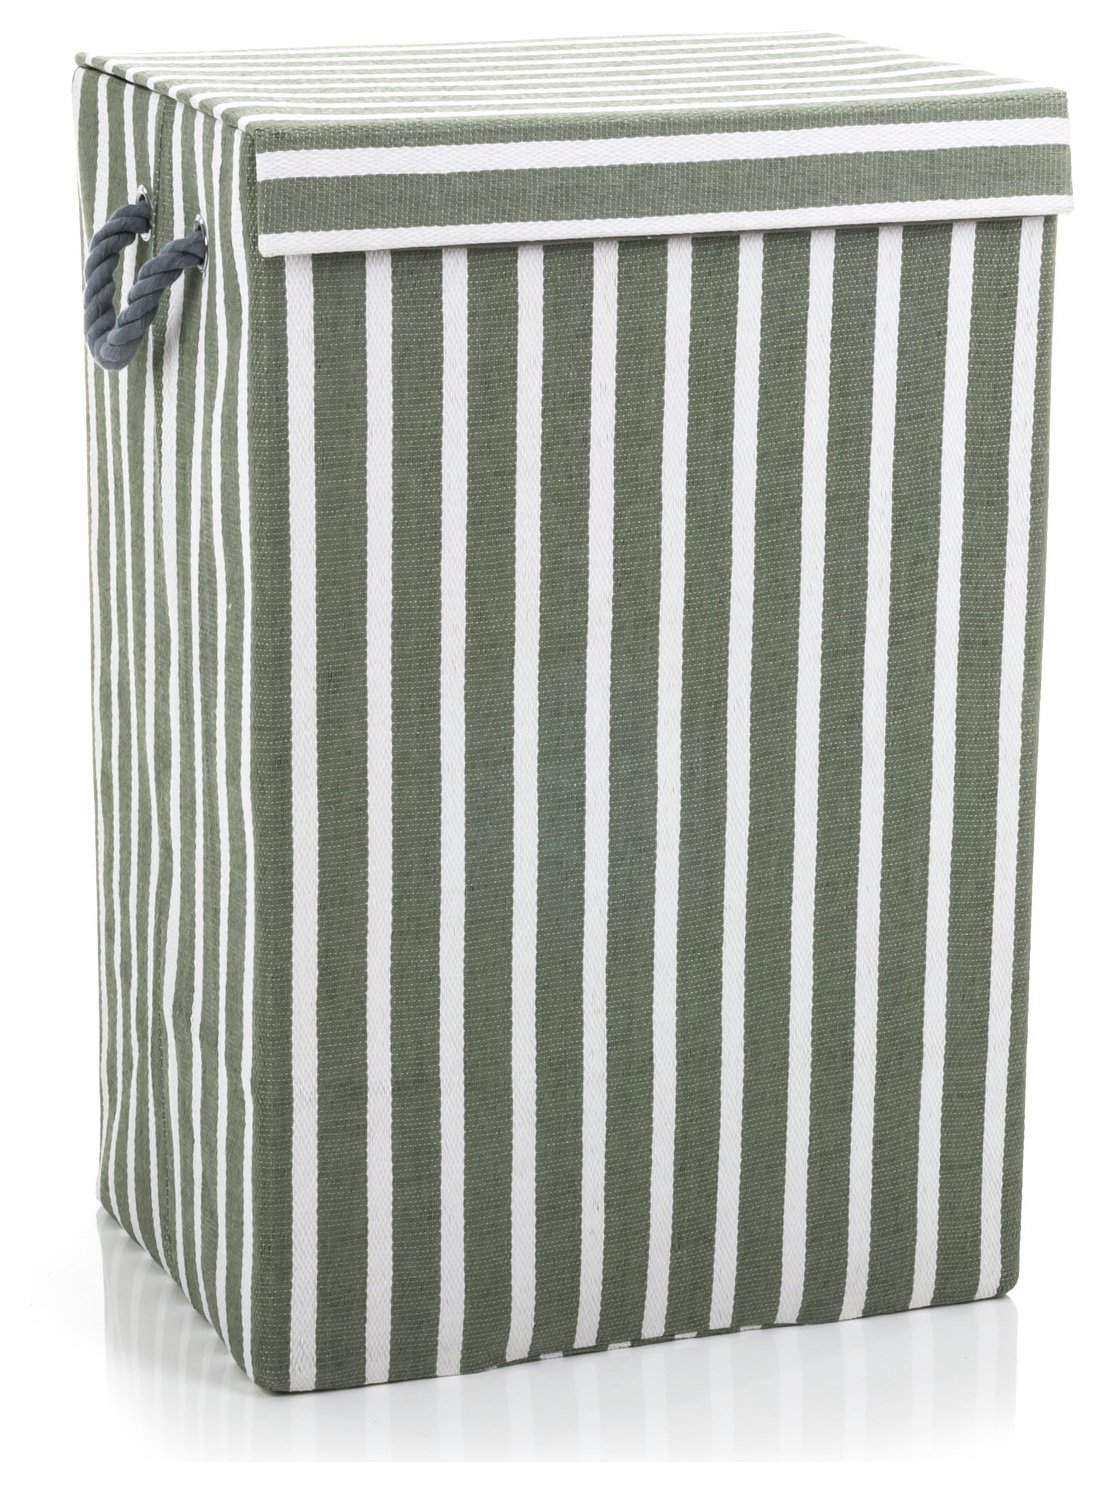 Minky Stripe Laundry Hamper - Grey/ Green